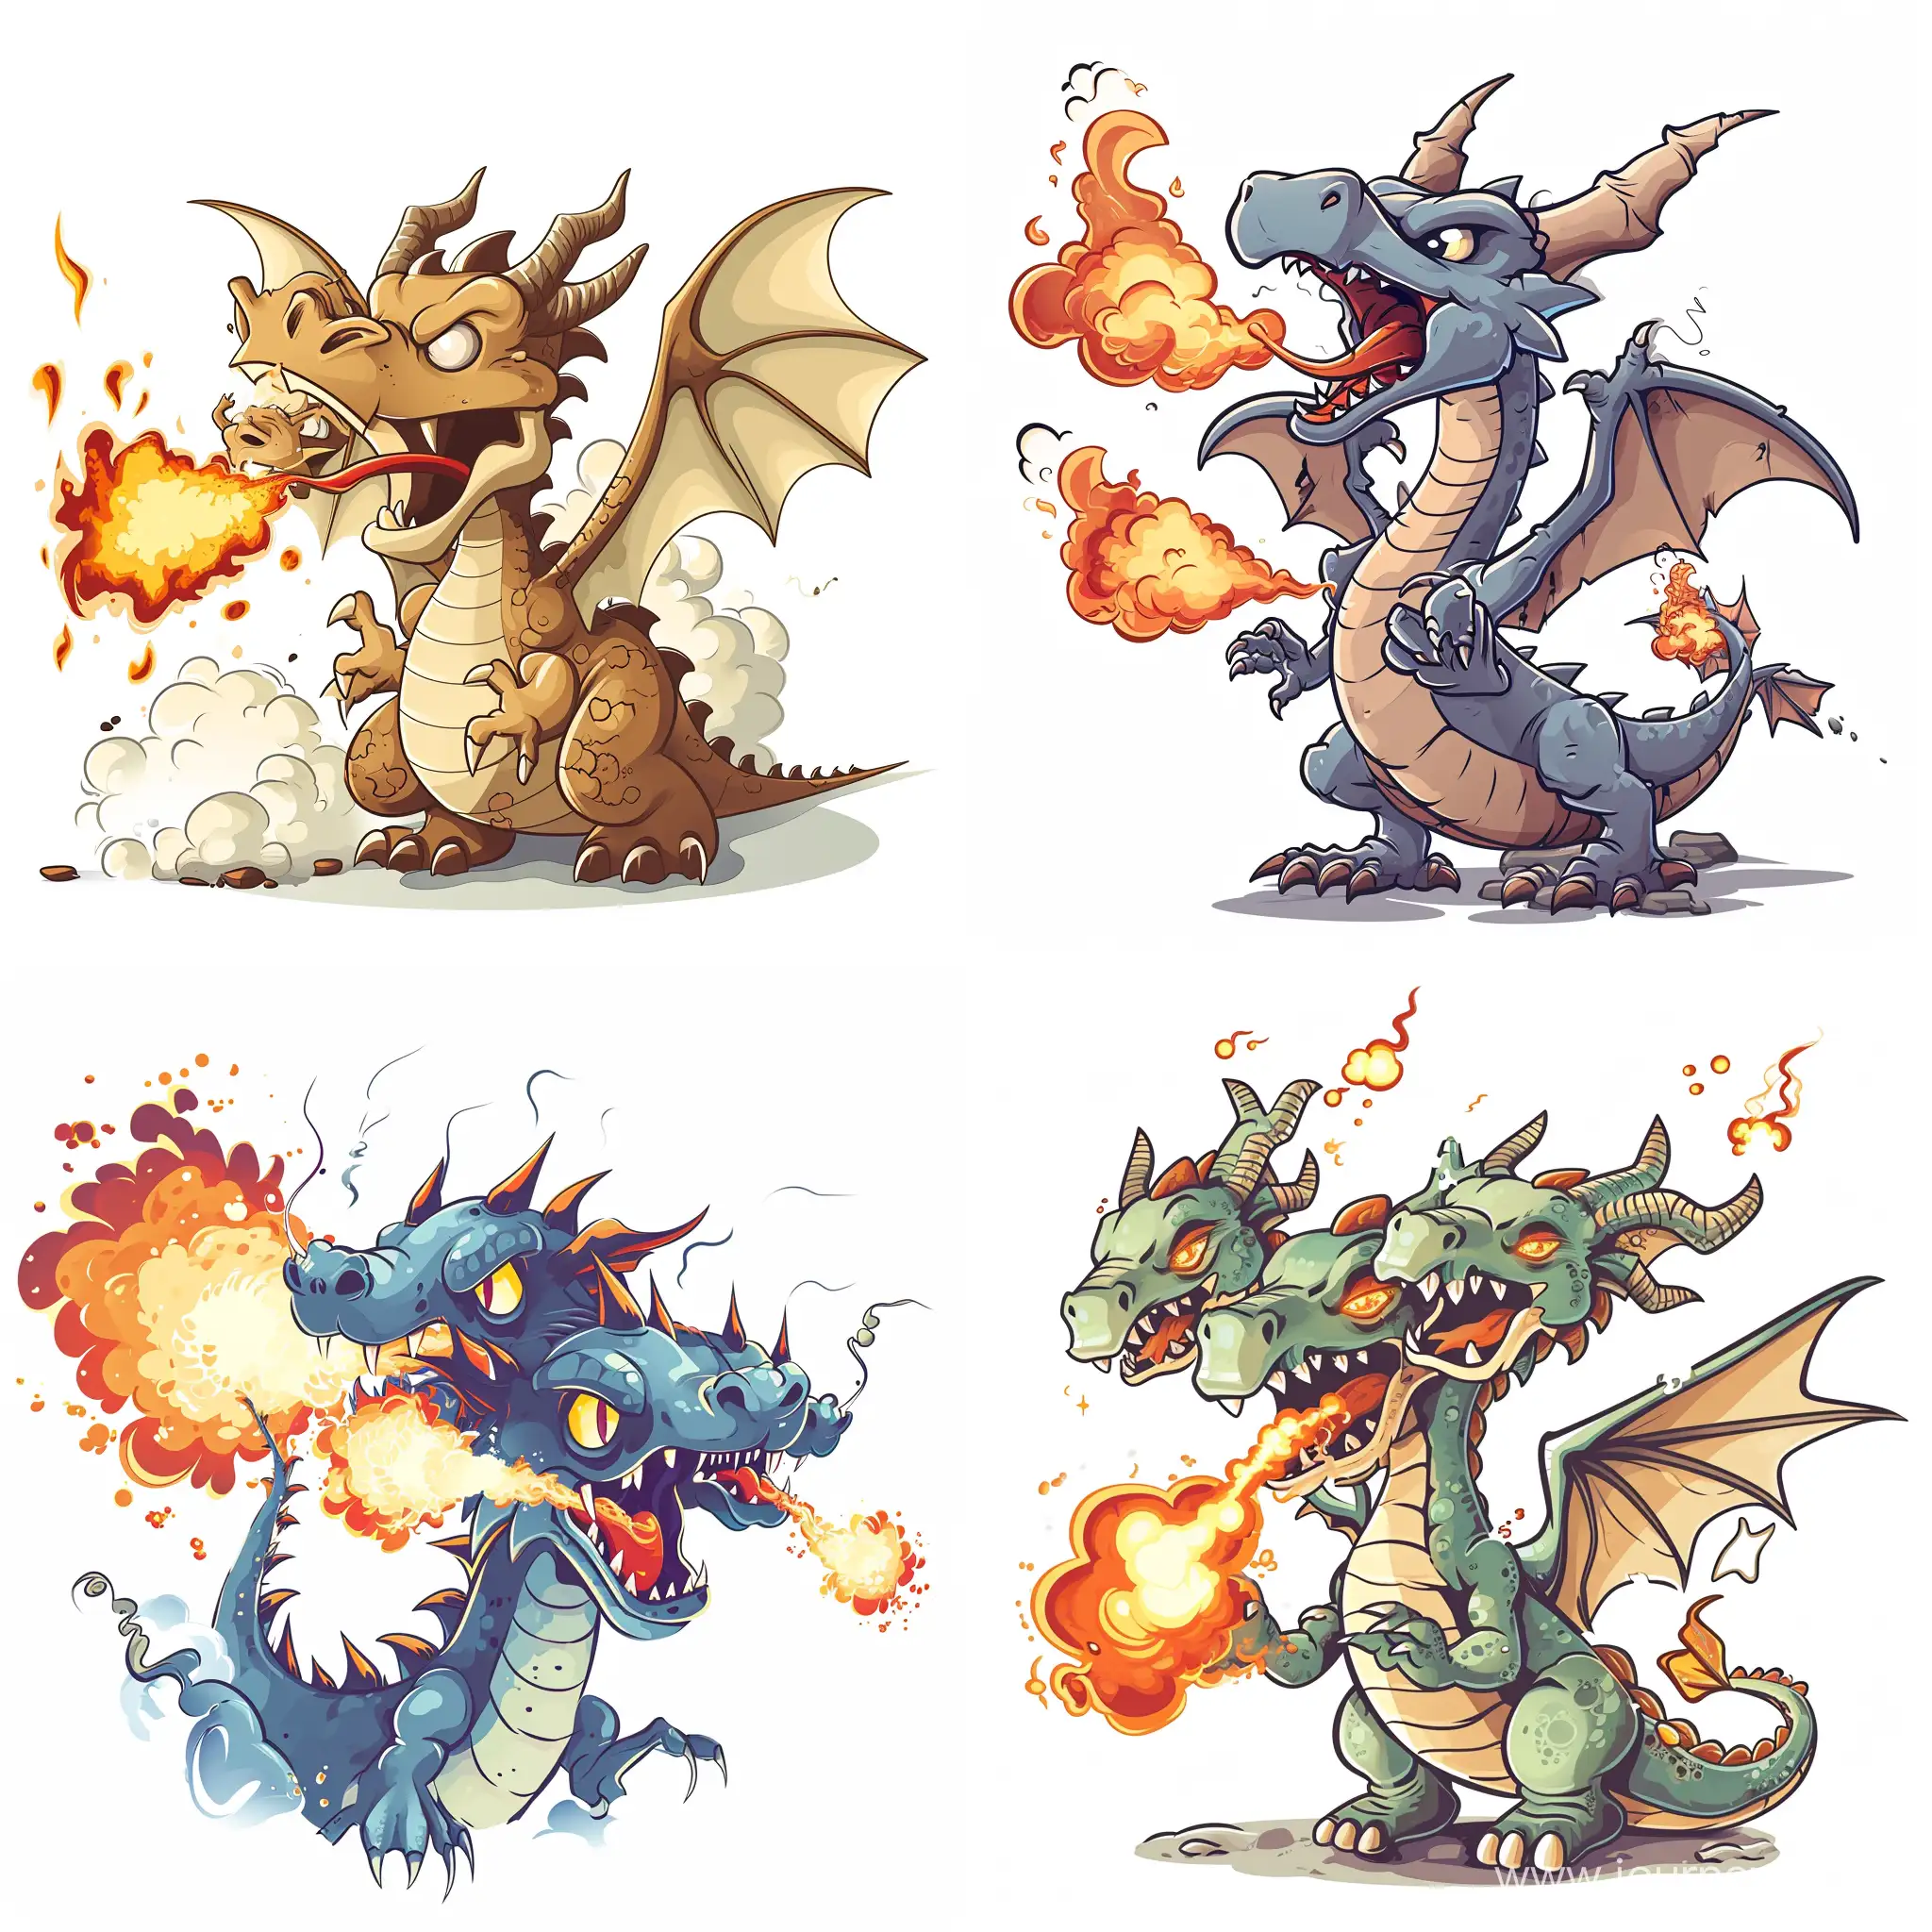 Fierce-ThreeHeaded-Dragon-Breathing-Fire-in-Cartoon-Style